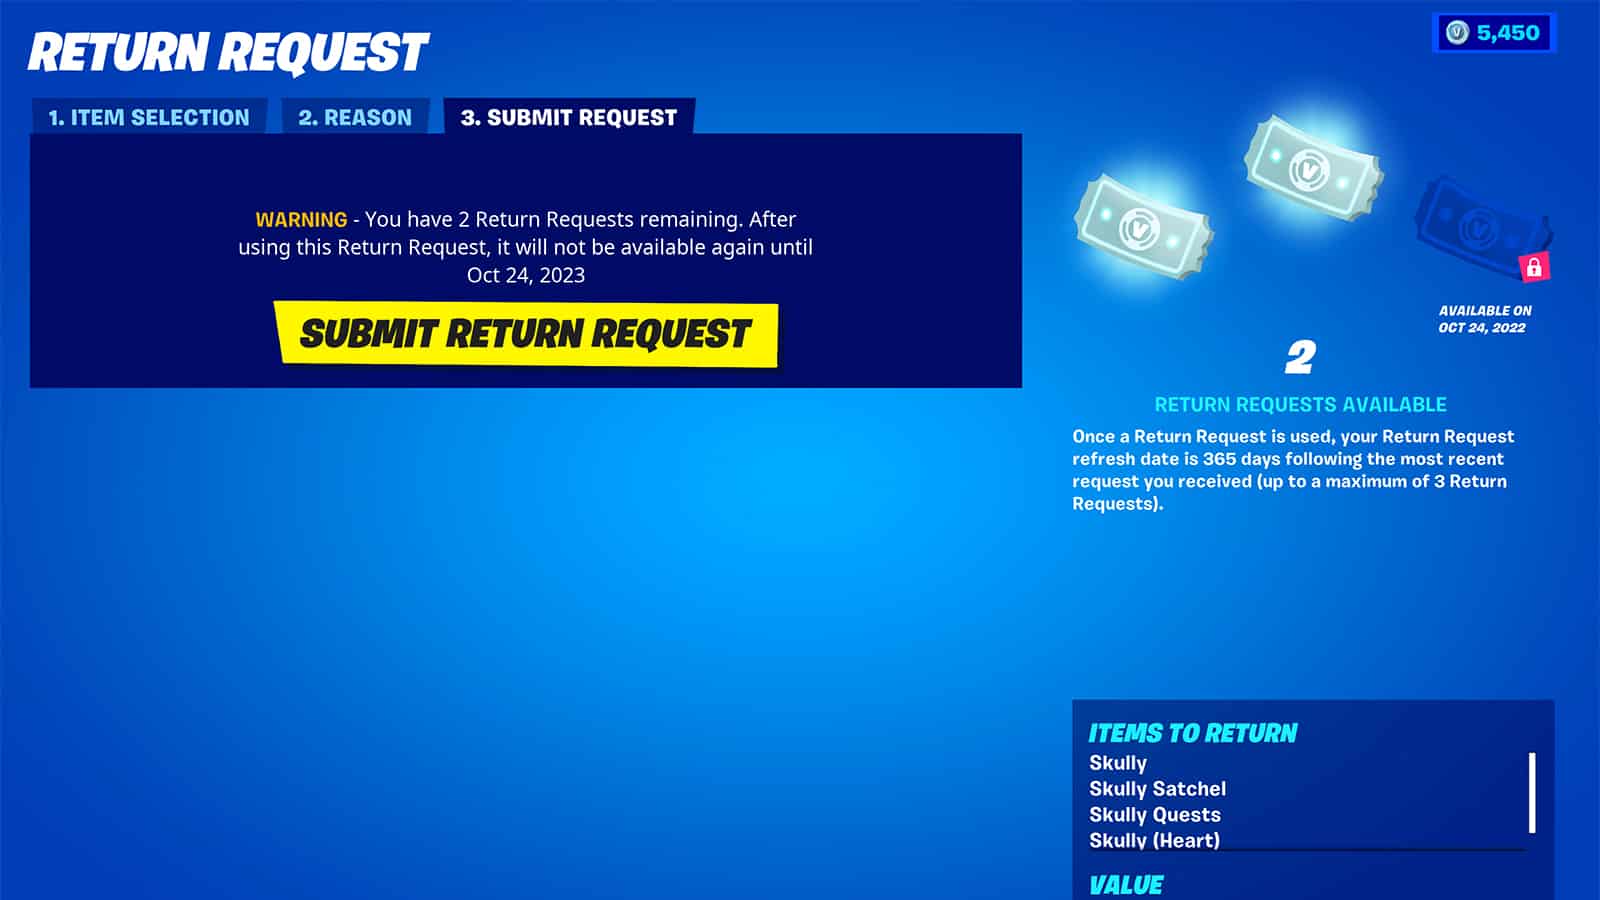 The Return Request screen in Fortnite